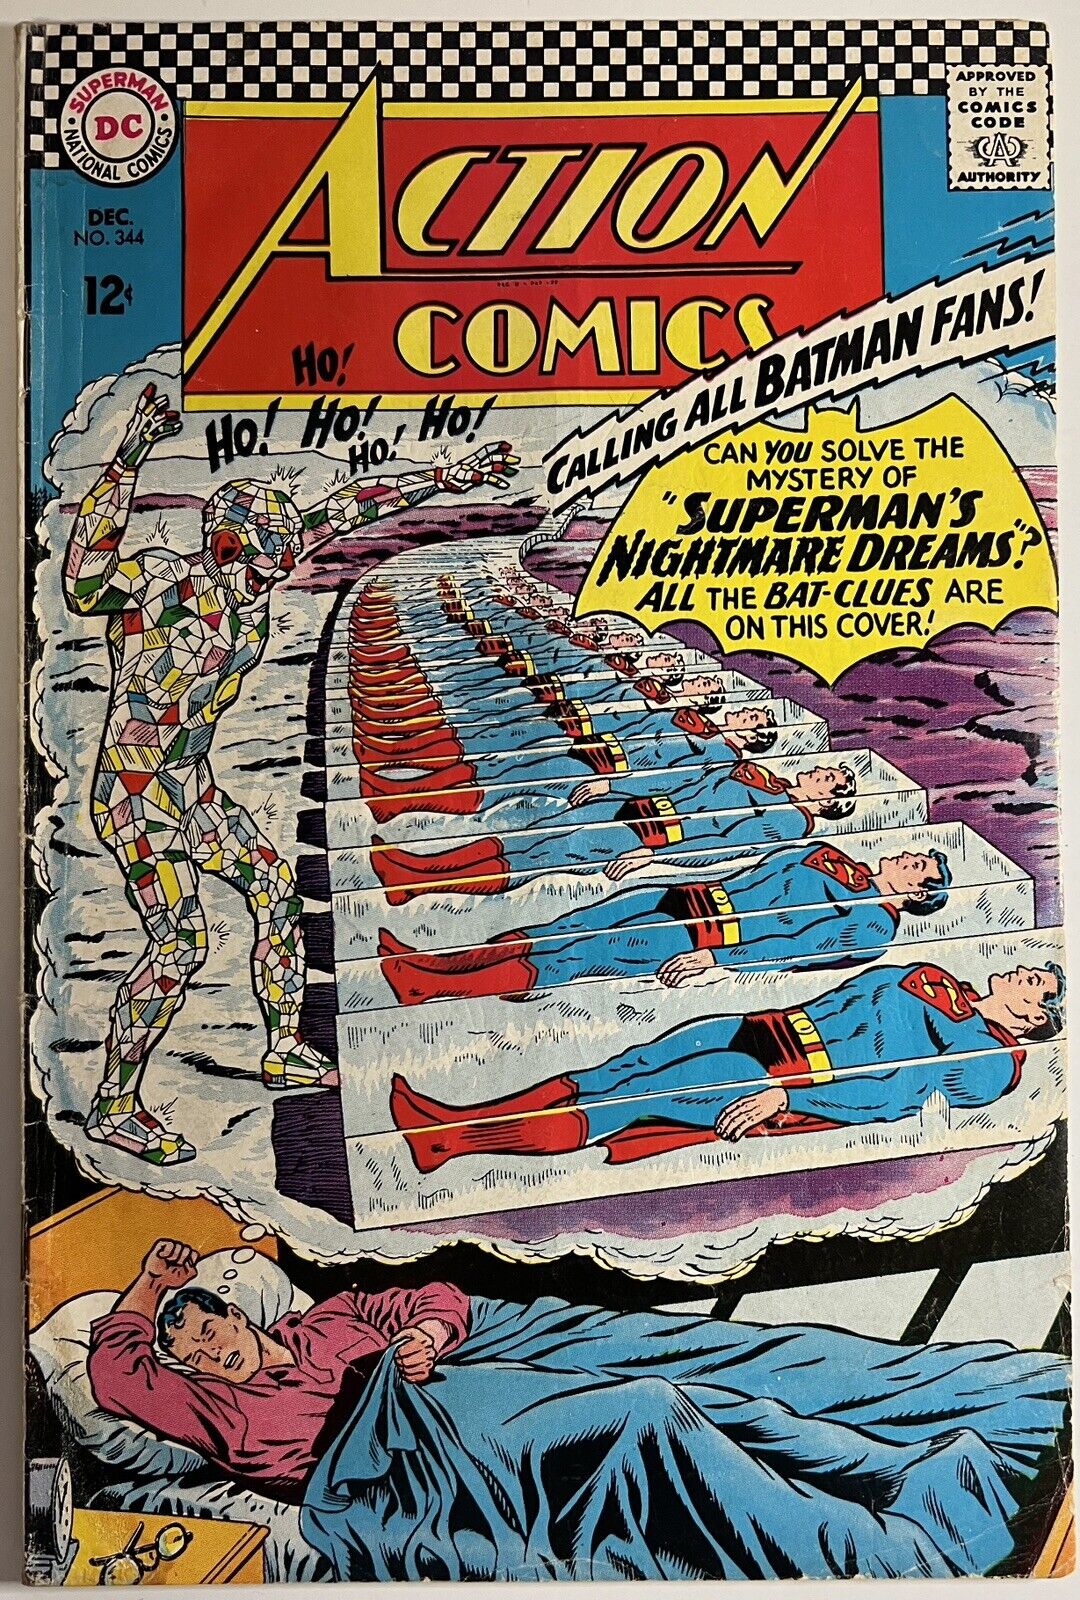 Action Comics #344 GD 1966 Batman DC Comics